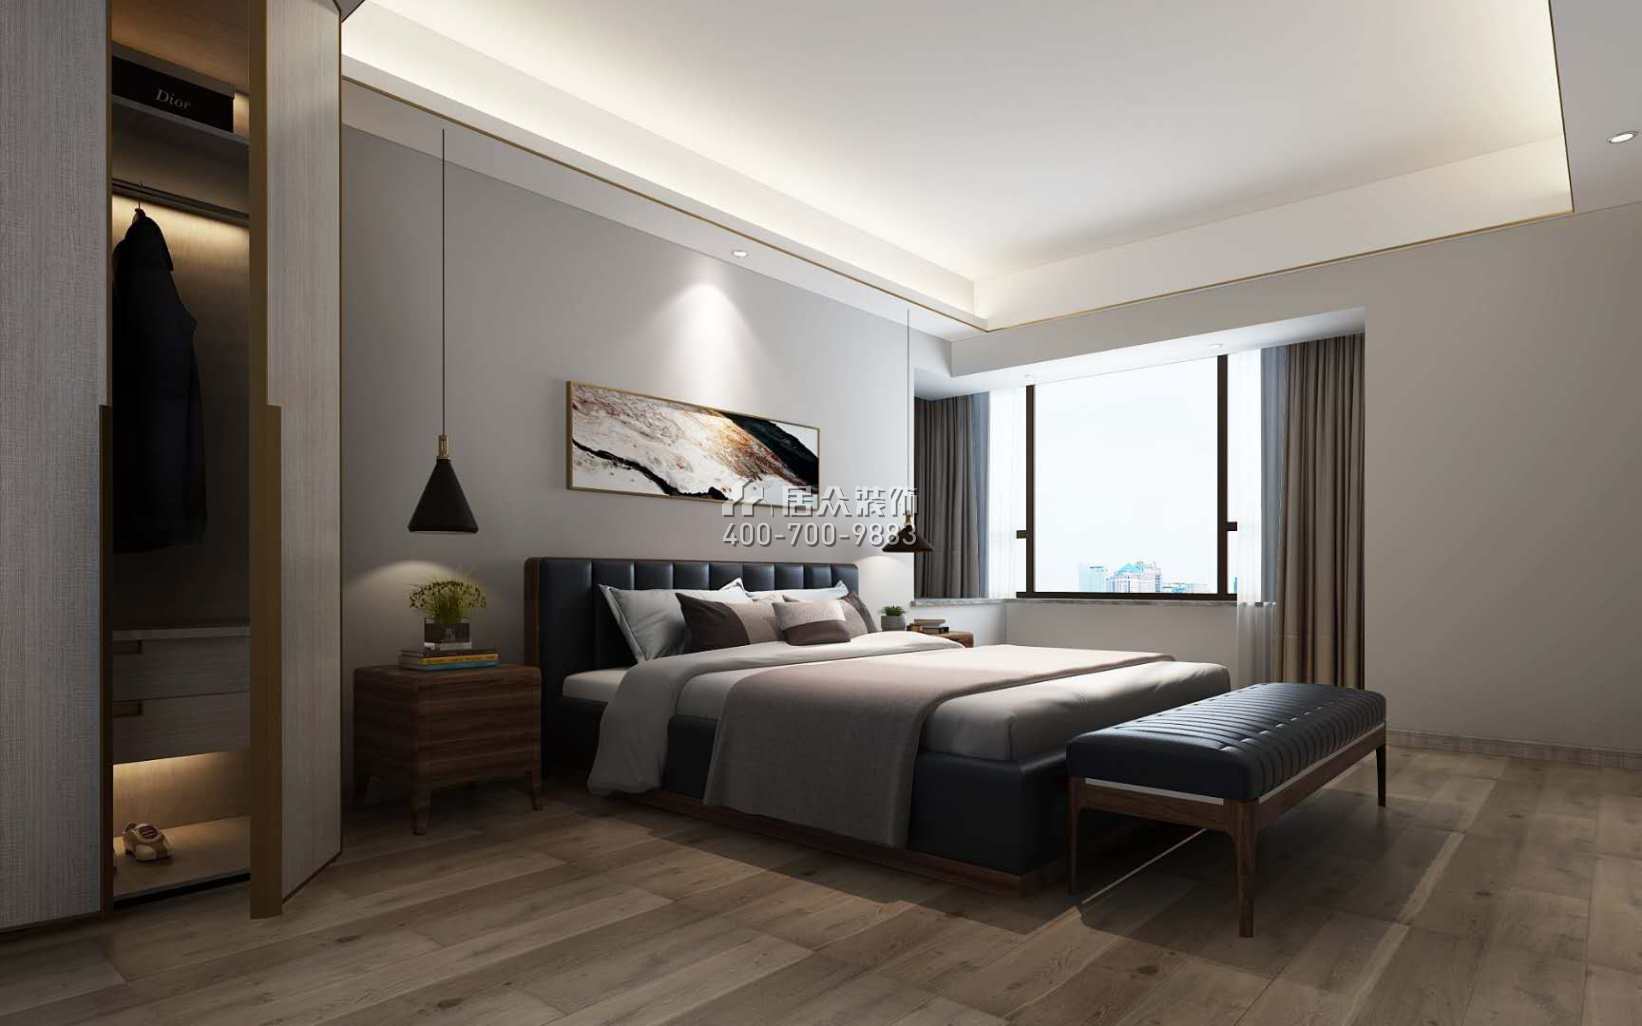 保利中央公园140平方米现代简约风格平层户型卧室装修效果图